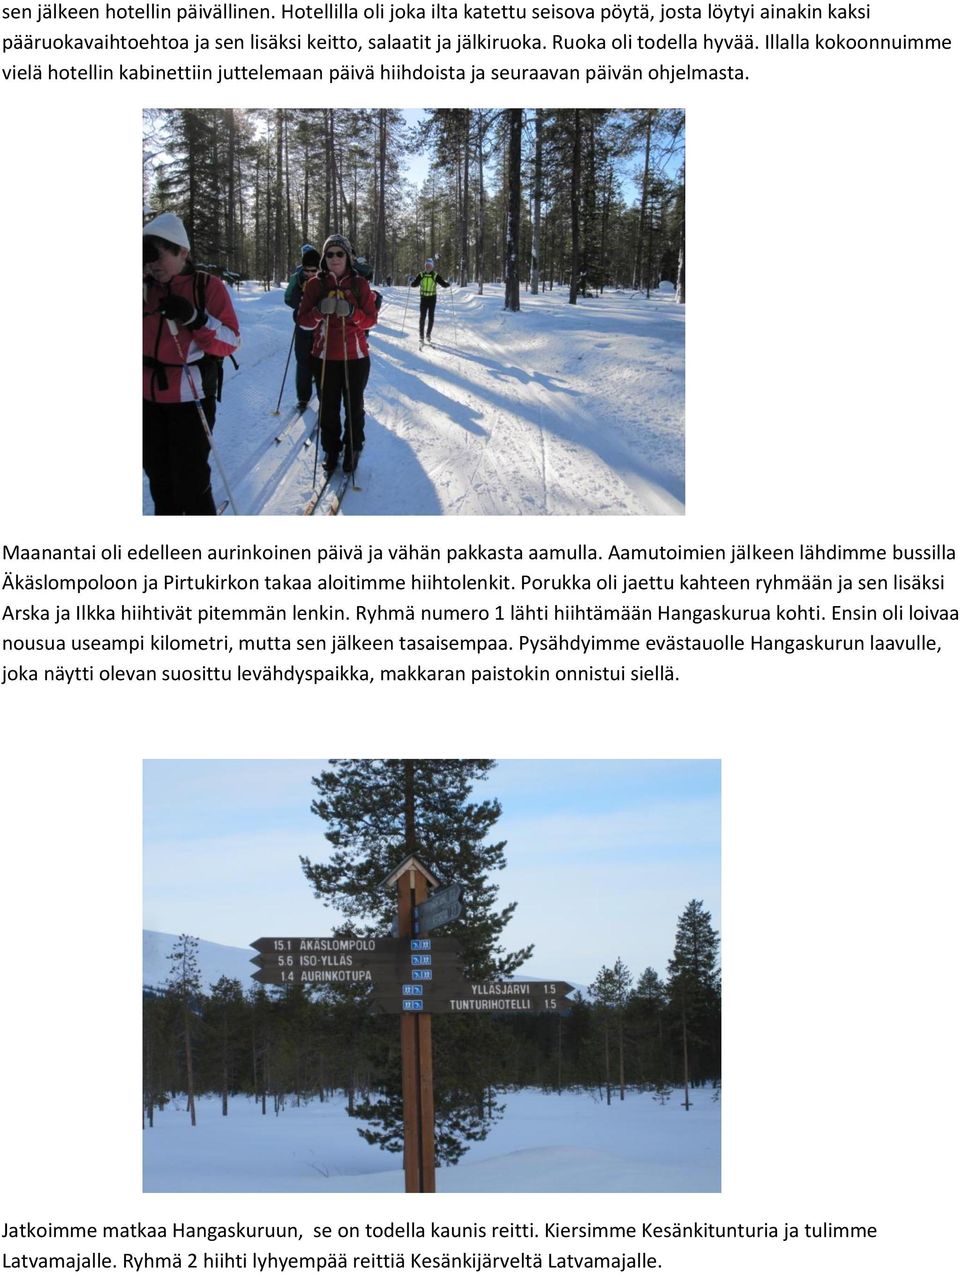 Aamutoimien jälkeen lähdimme bussilla Äkäslompoloon ja Pirtukirkon takaa aloitimme hiihtolenkit. Porukka oli jaettu kahteen ryhmään ja sen lisäksi Arska ja Ilkka hiihtivät pitemmän lenkin.